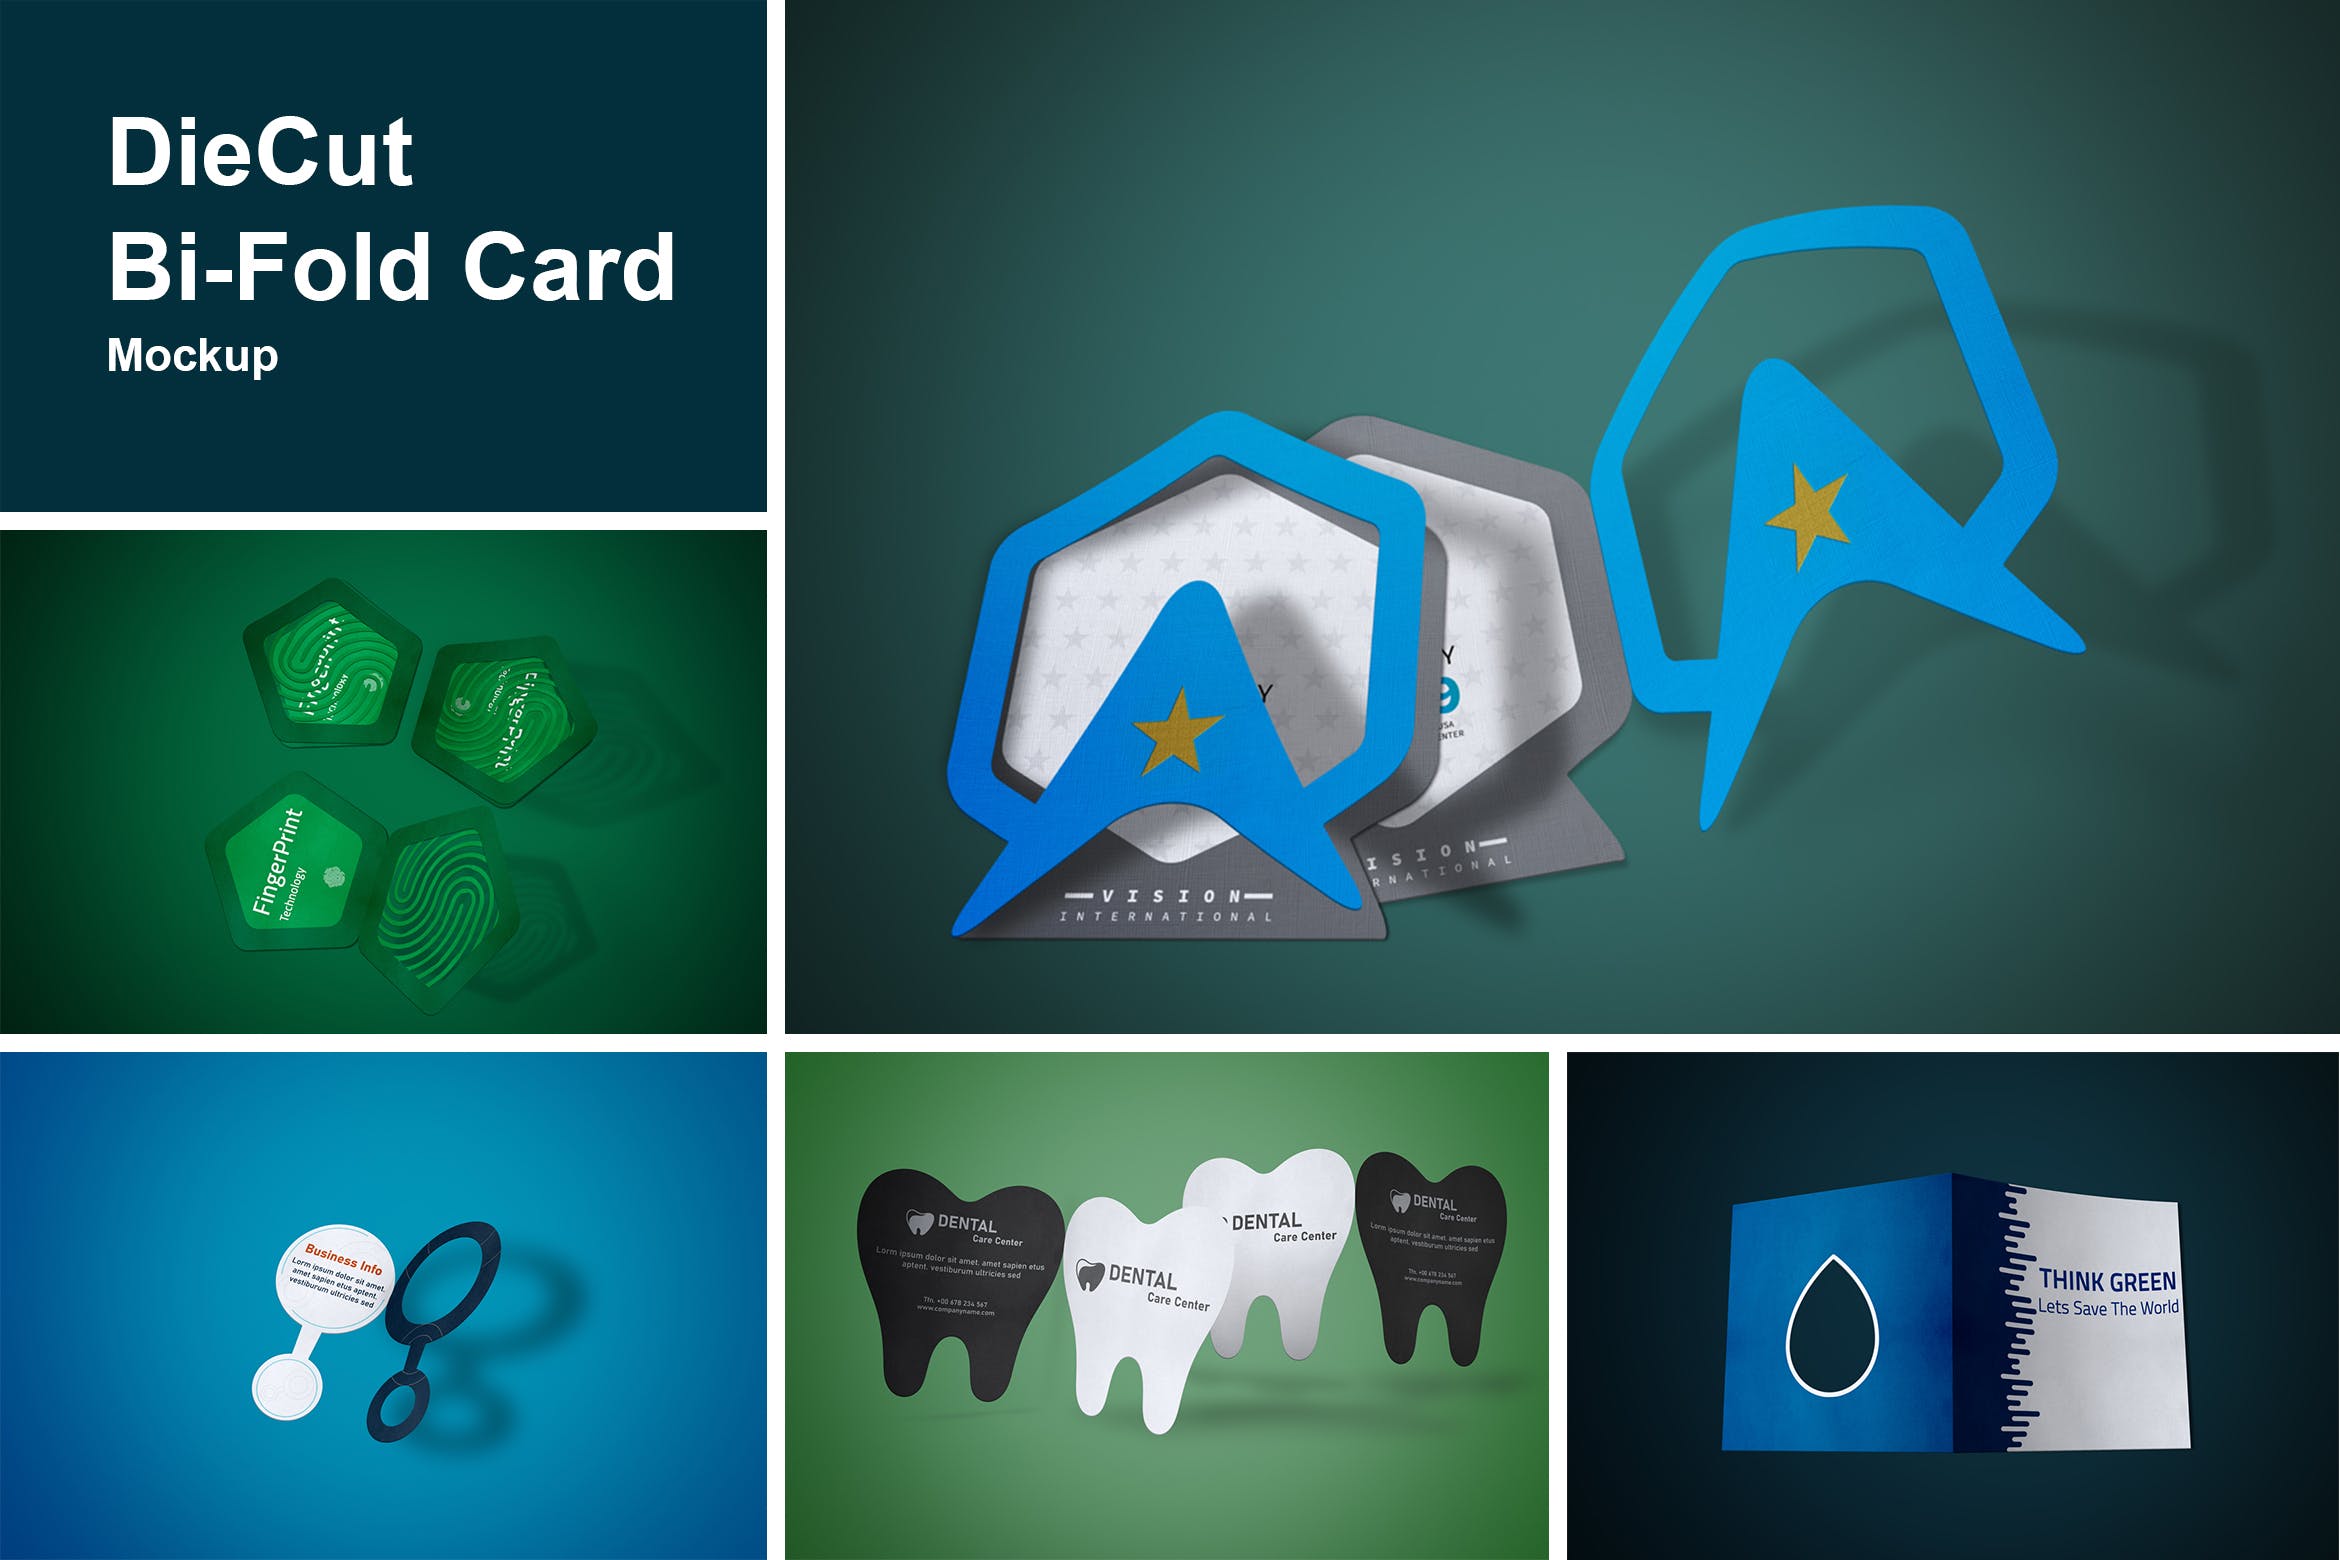 DieCut裁切工艺折叠卡片设计图素材库精选 DieCut Bi-Fold Card Mockup插图